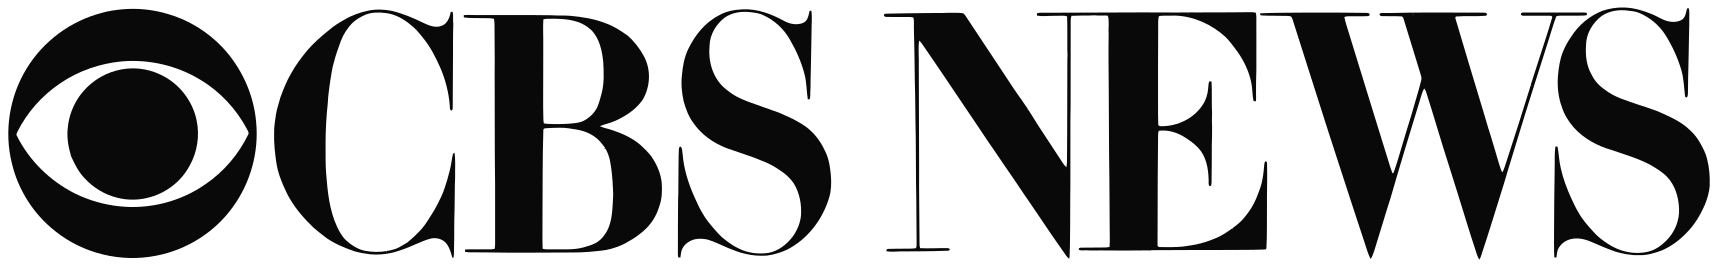 cbs-news-logo.png